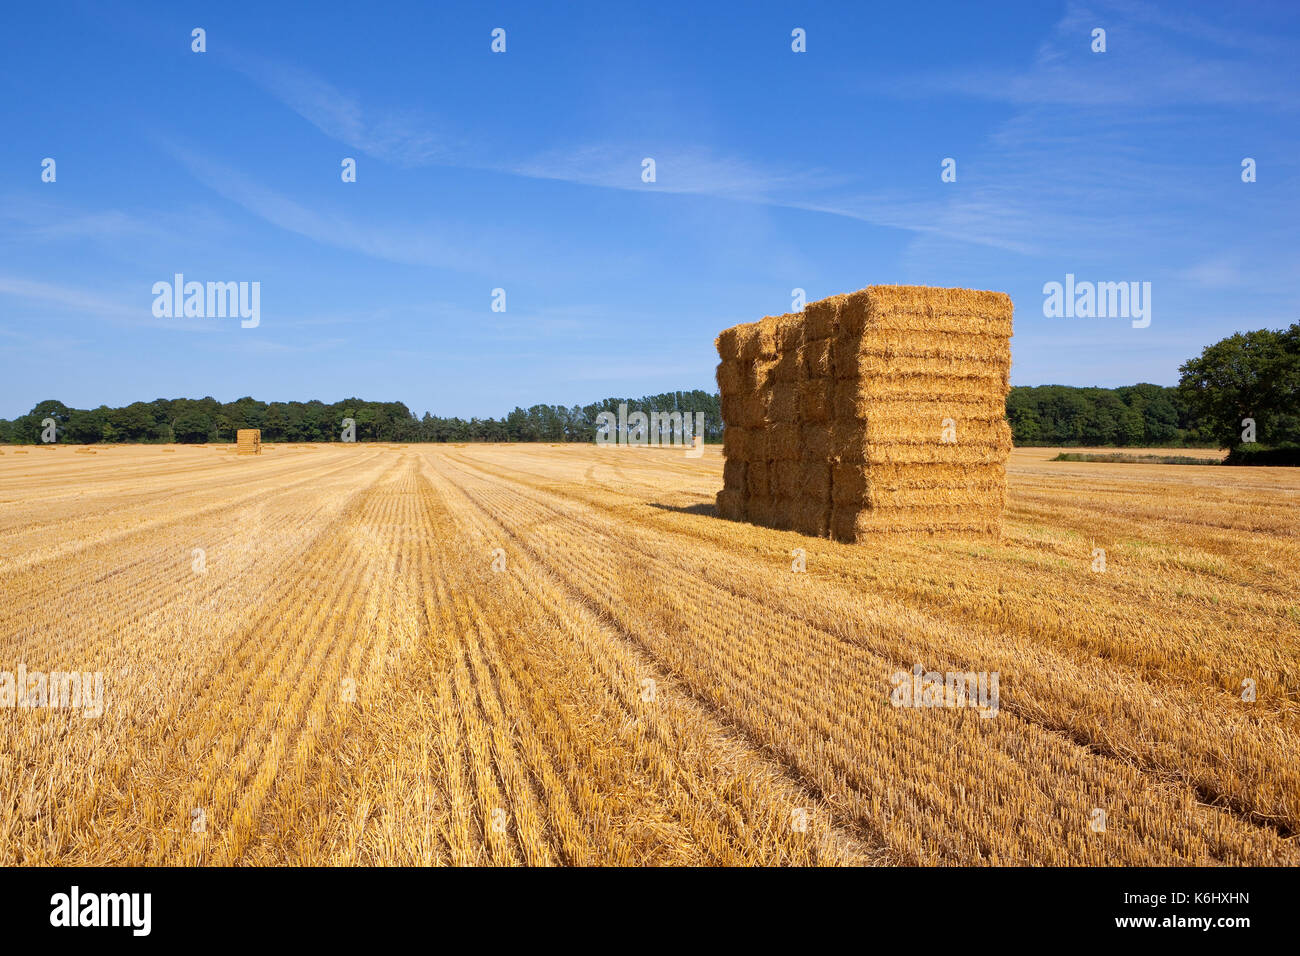 Les modèles et lignes hrvested dans un champ de blé avec une pile de ballots de paille et de bois sous un ciel d'été bleu au yorkshire Banque D'Images